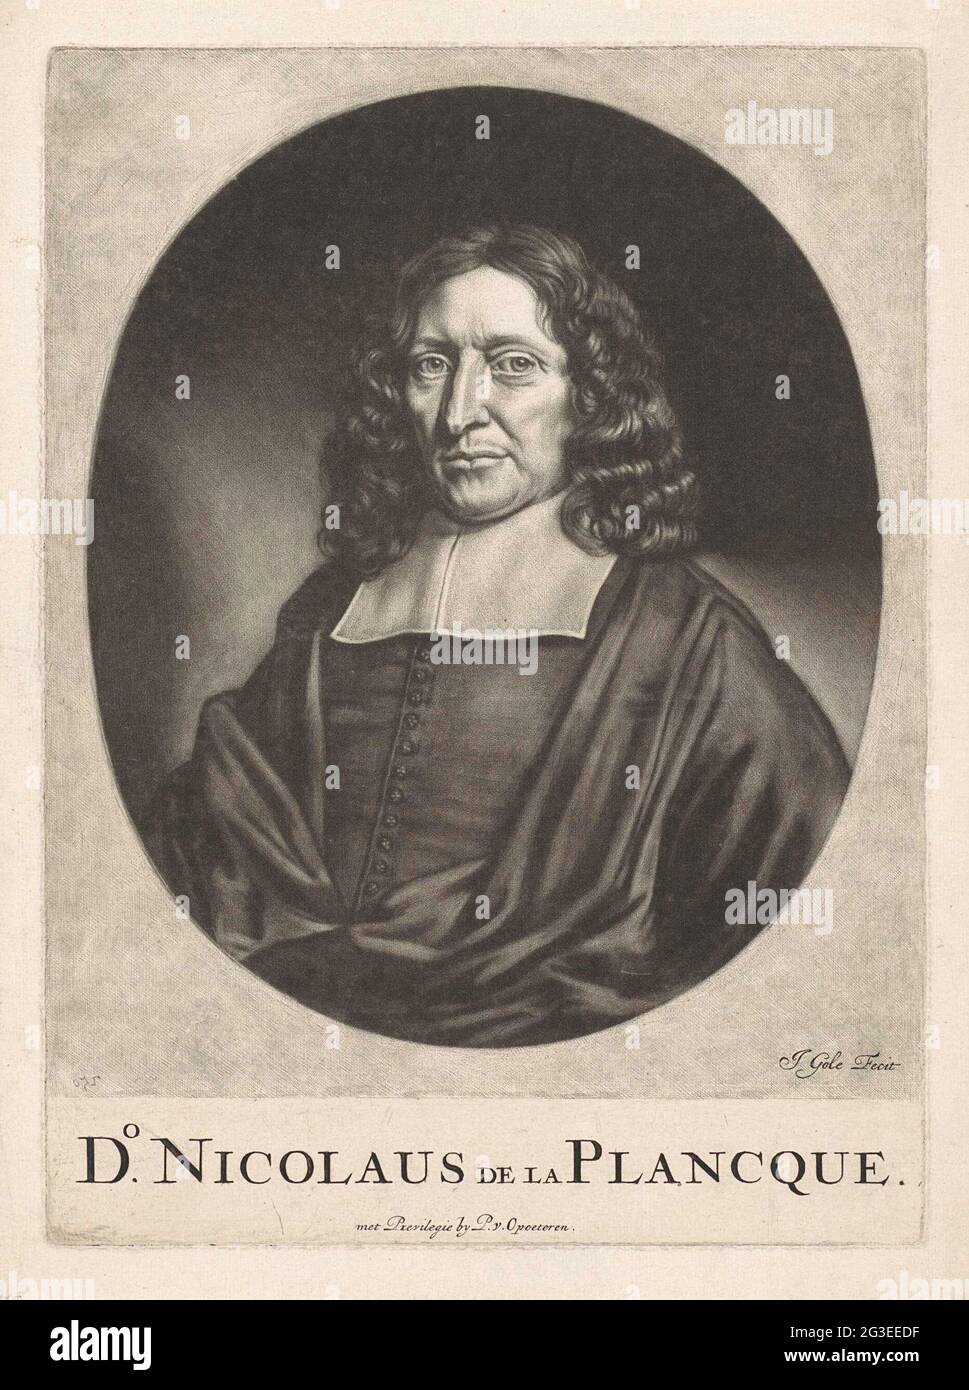 Porträt von Nicolaas de la Planque. Nicolaas de la Planque, Pfarrer in Amsterdam und anderen Städten. Stockfoto